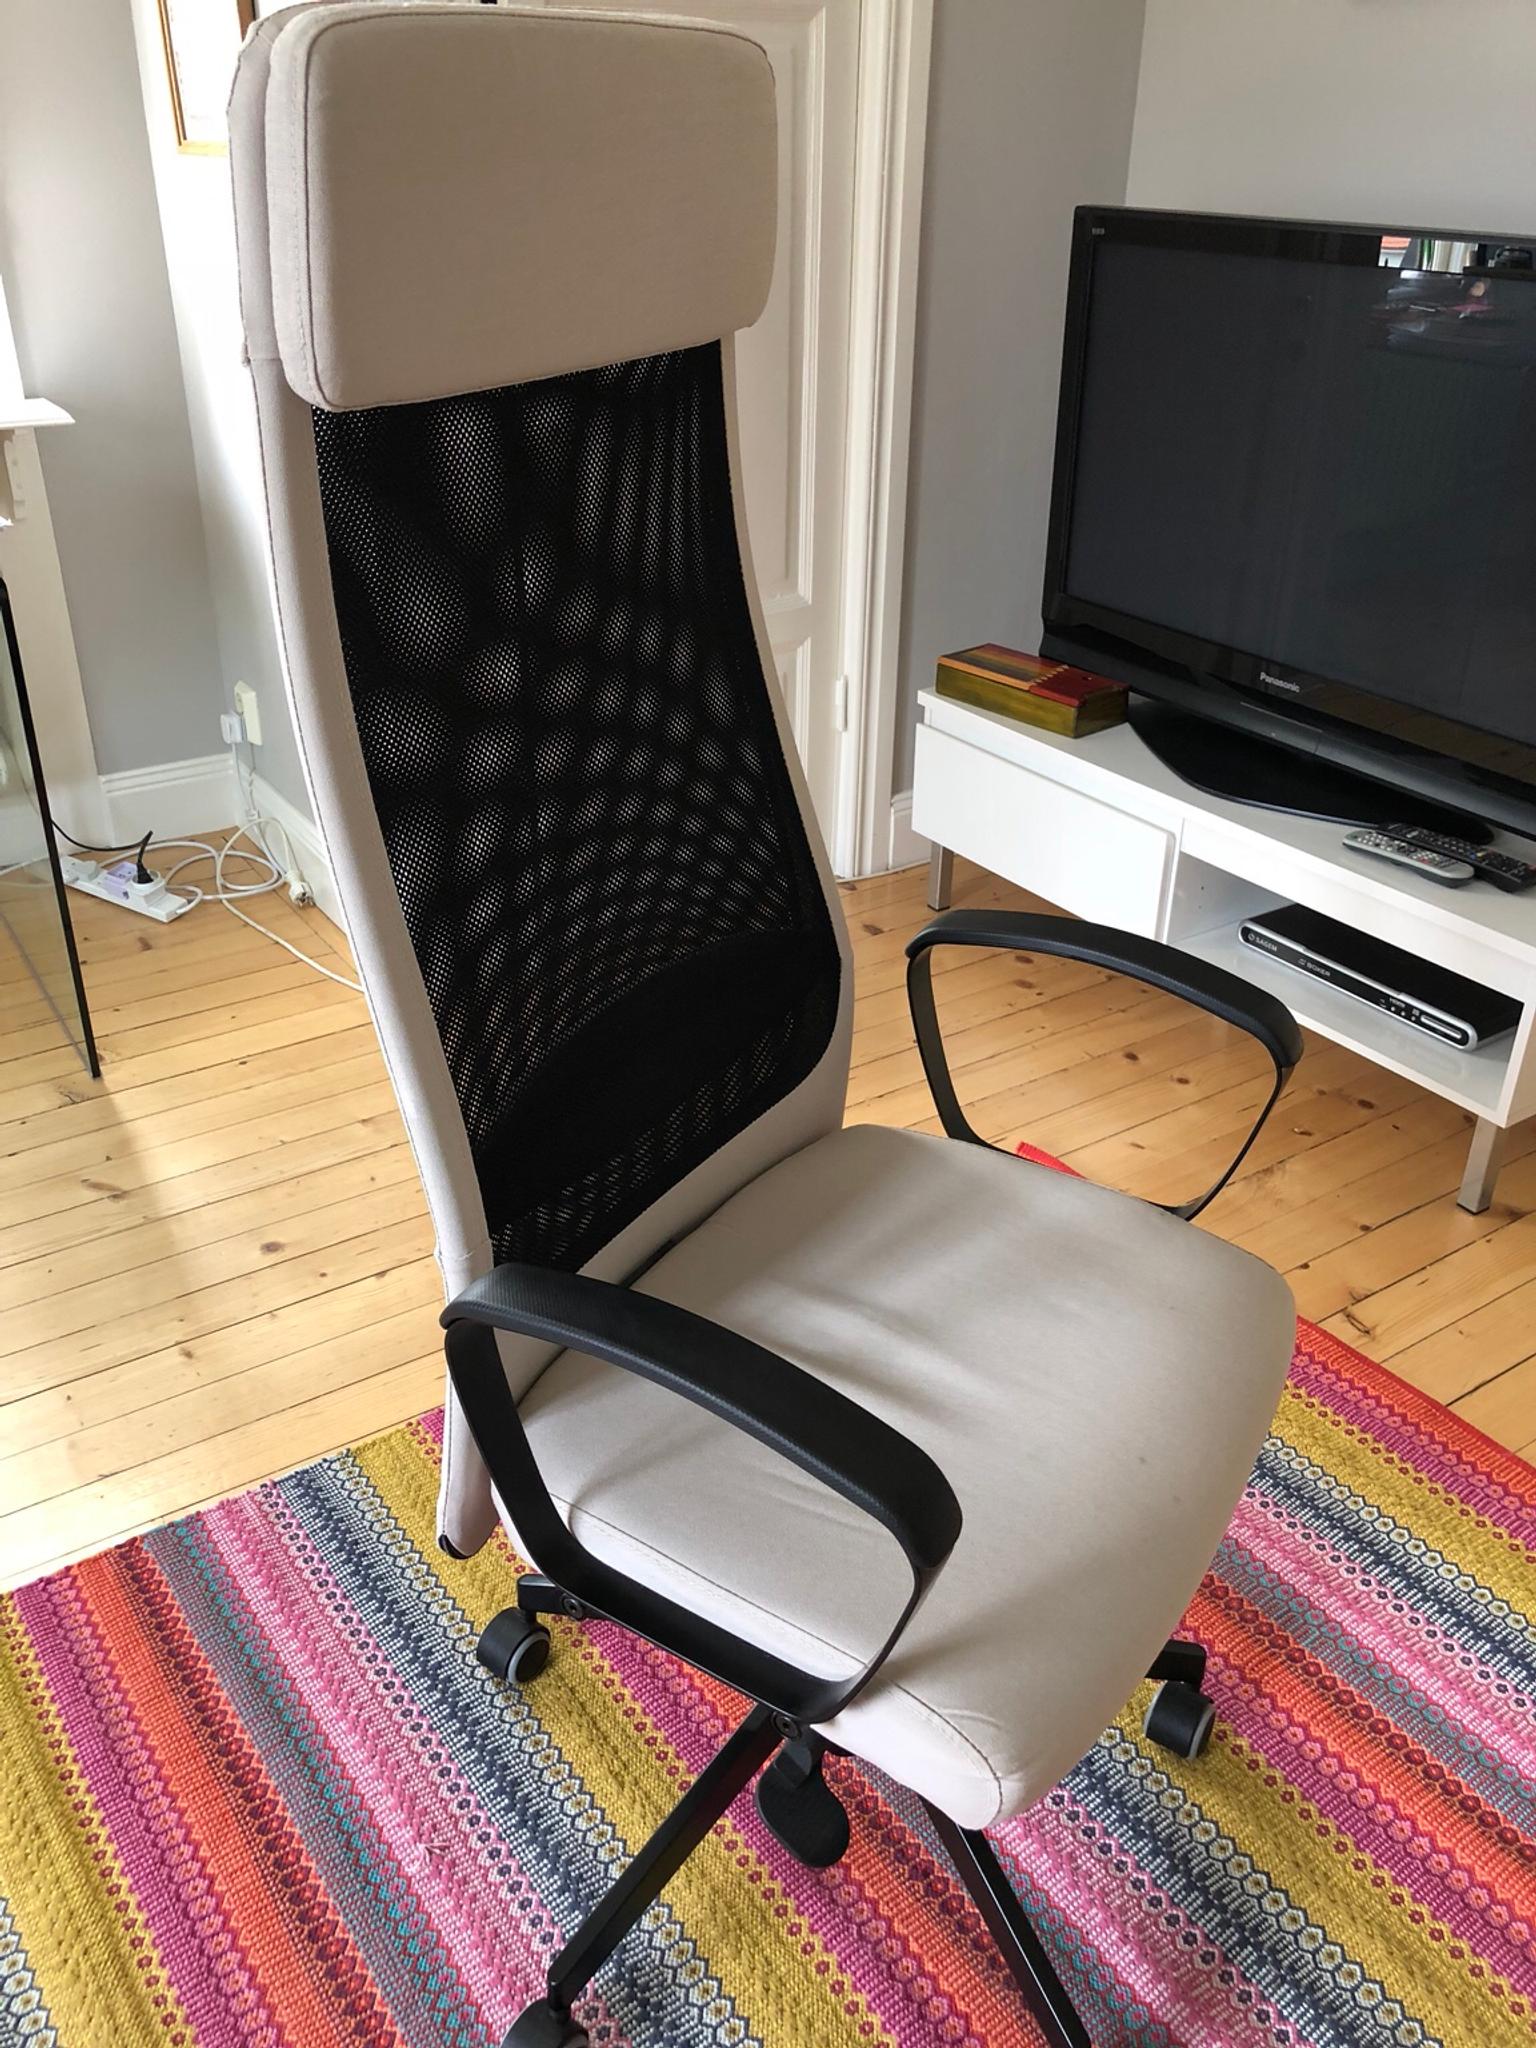 jÄrvfjÄllet  office chair in 12535 stockholm für gratis zum